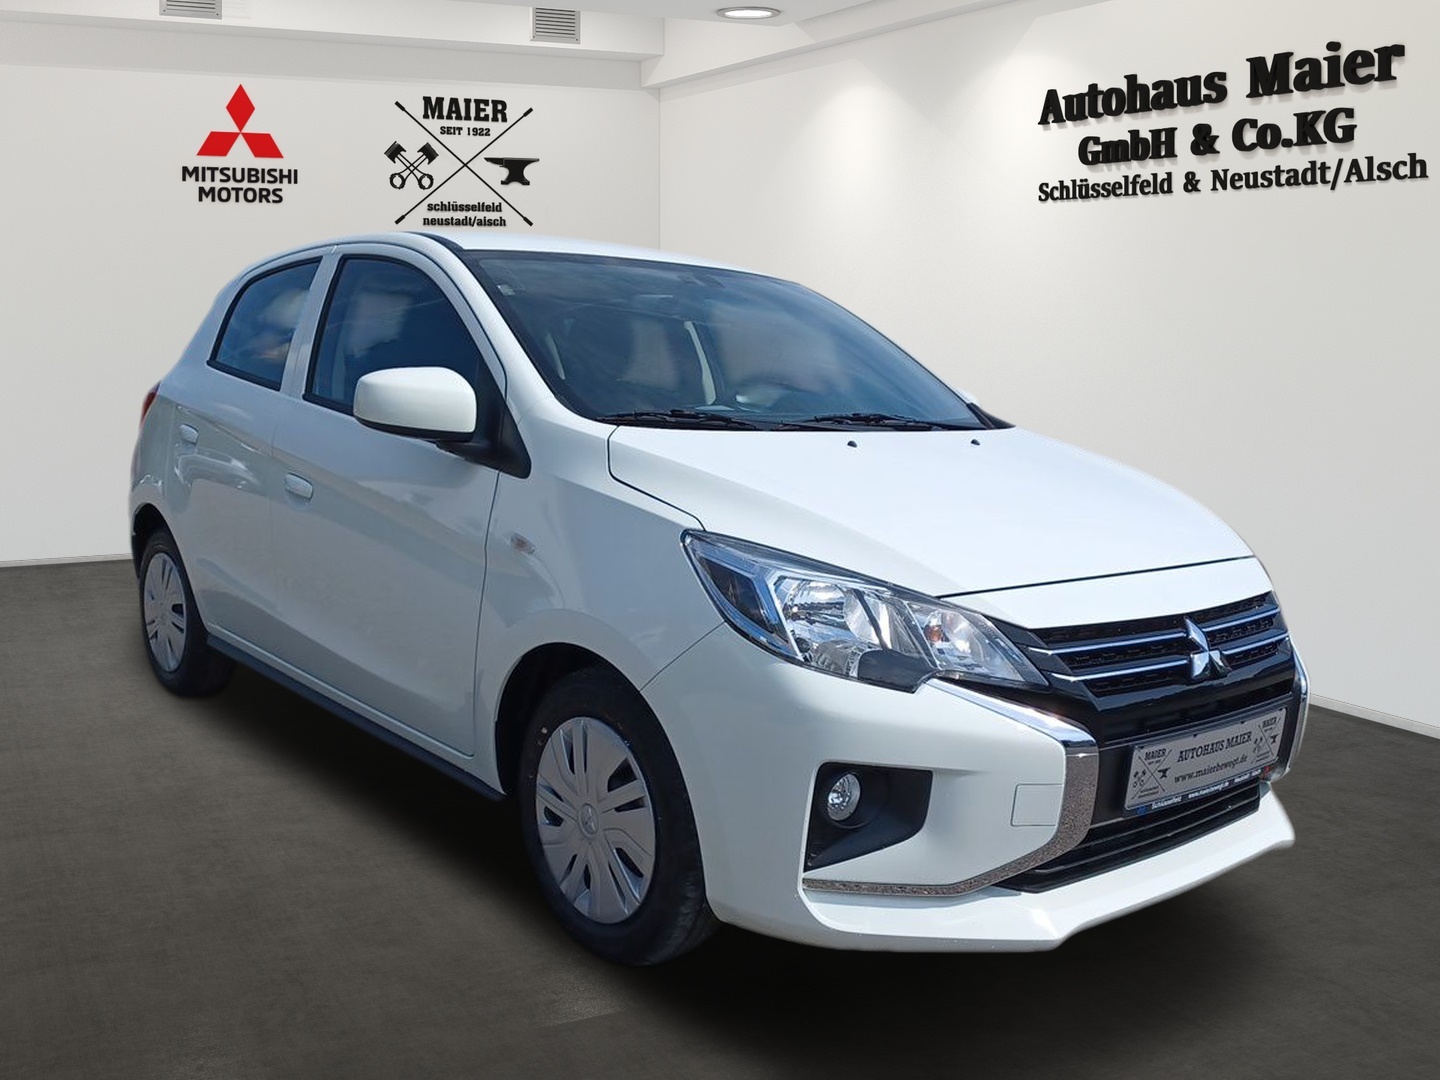 Neuwagen Mitsubishi Spacestar weiß: Hauptgewinn Adventskalender 2022